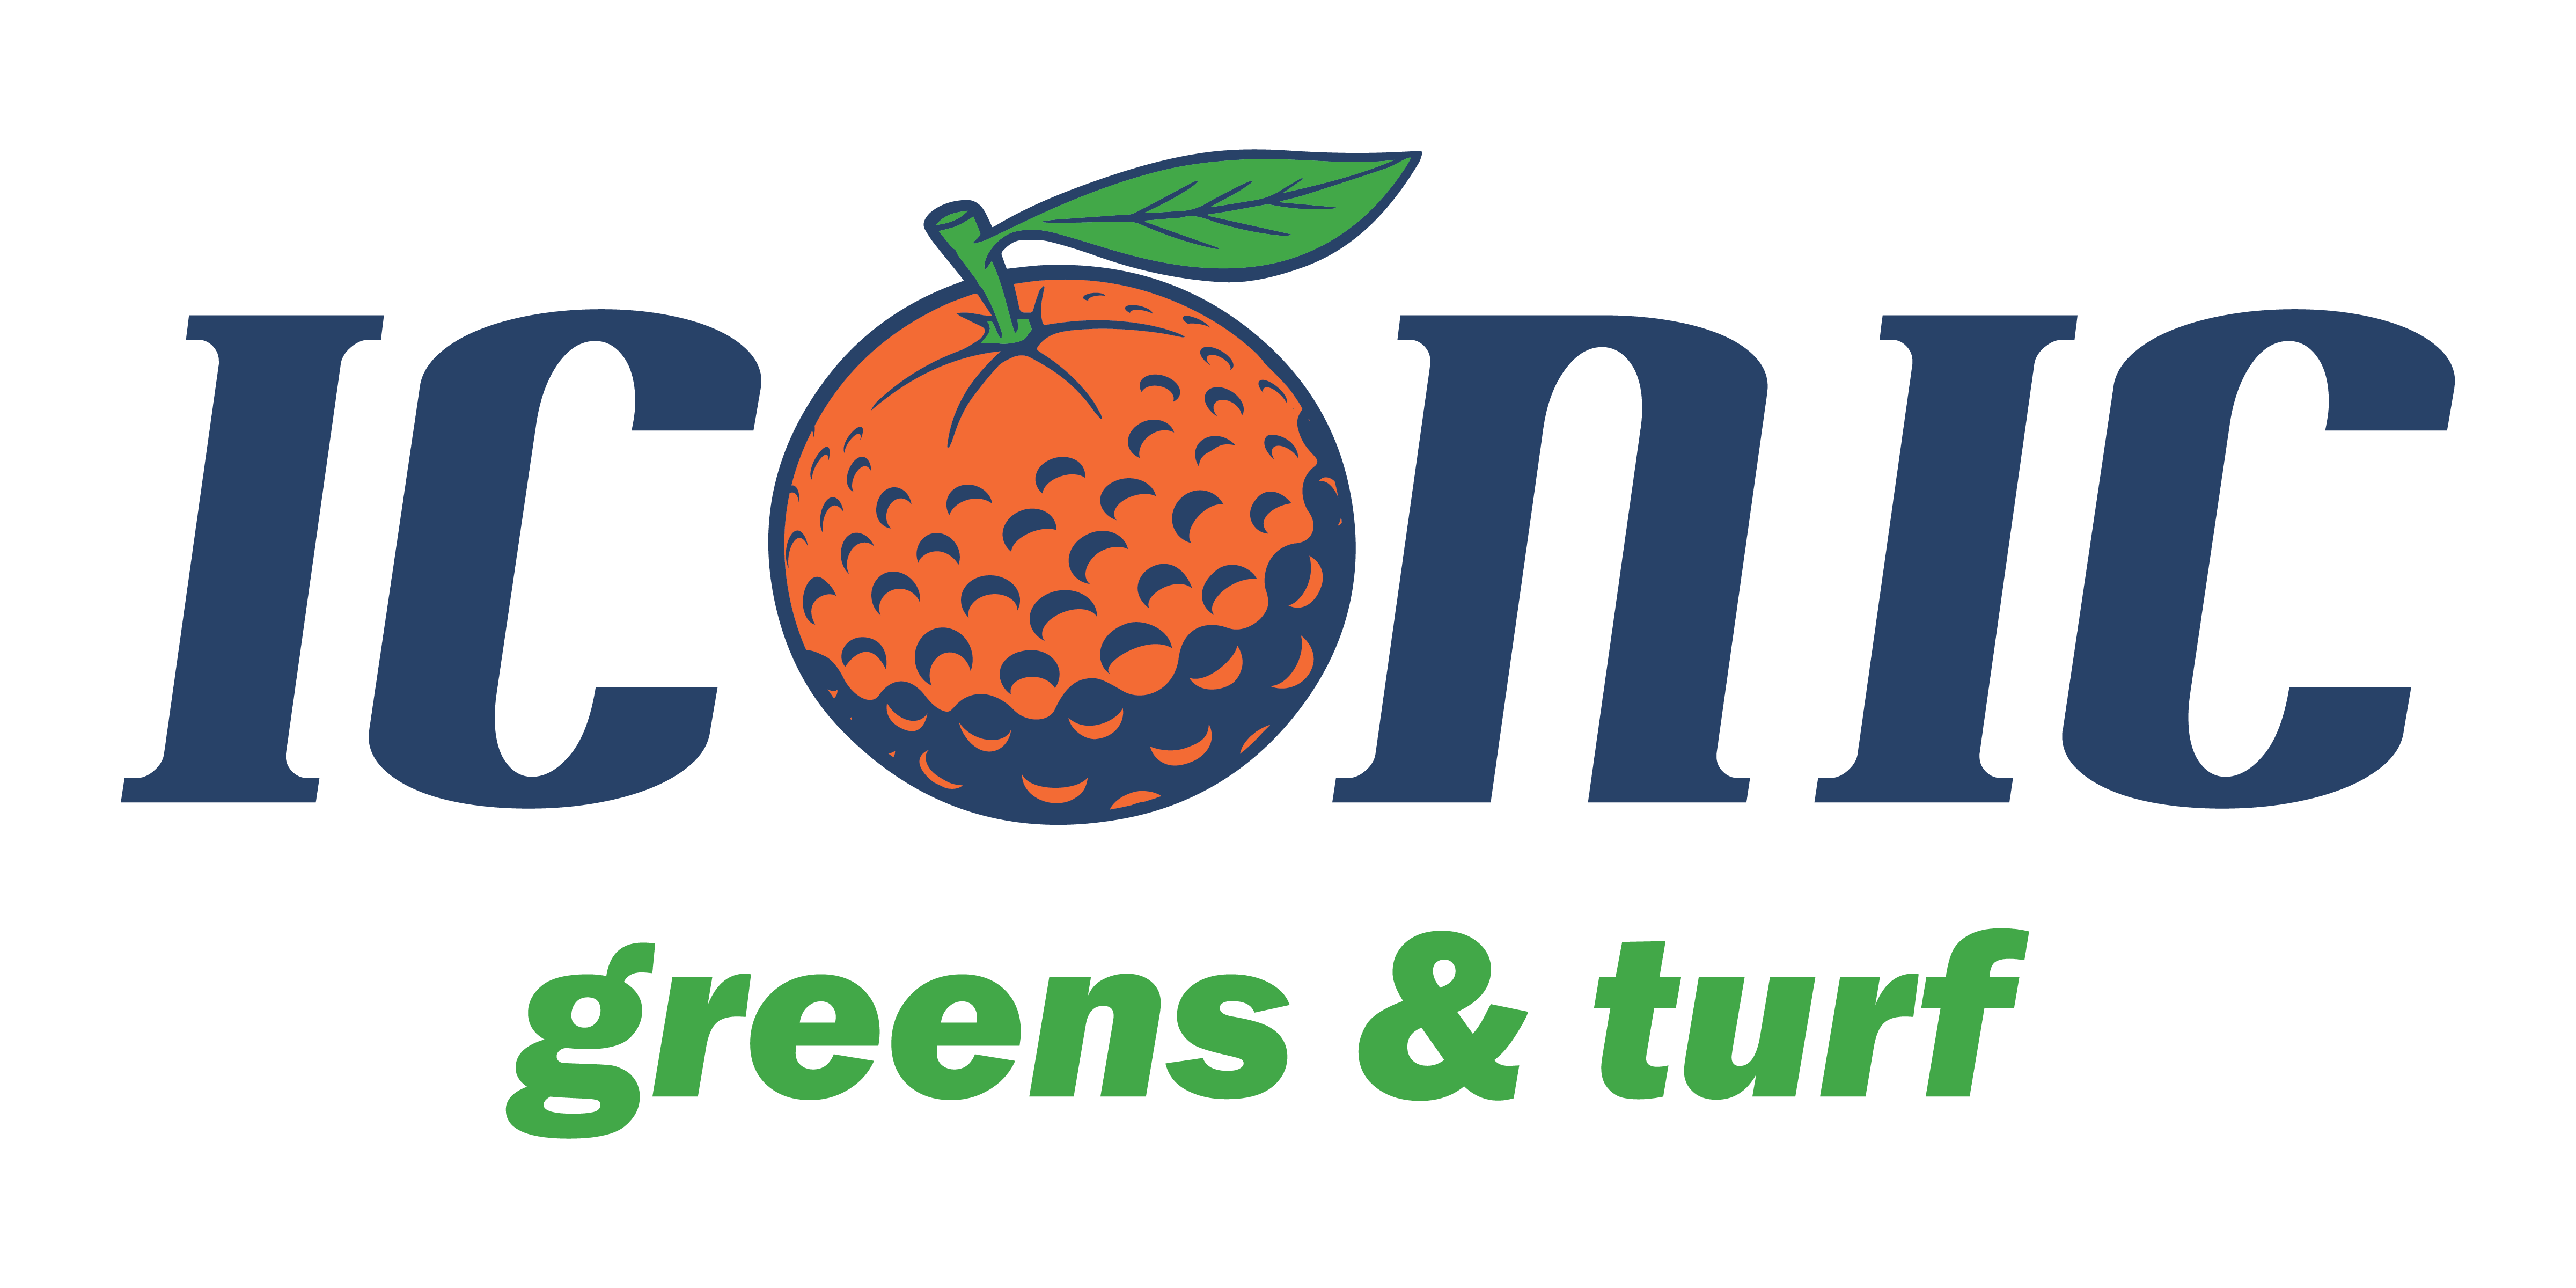 Iconic Greens & Turf